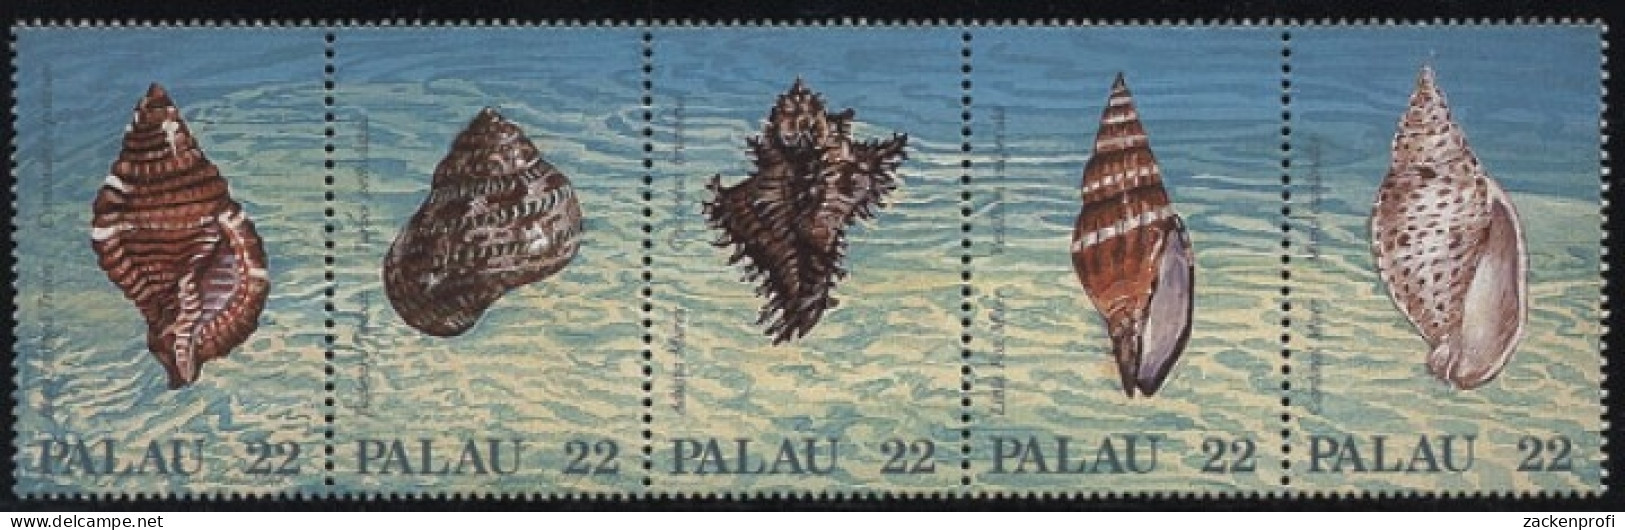 Palau 1987 Meeresschnecken 192/96 ZD Postfrisch (C25448) - Palau